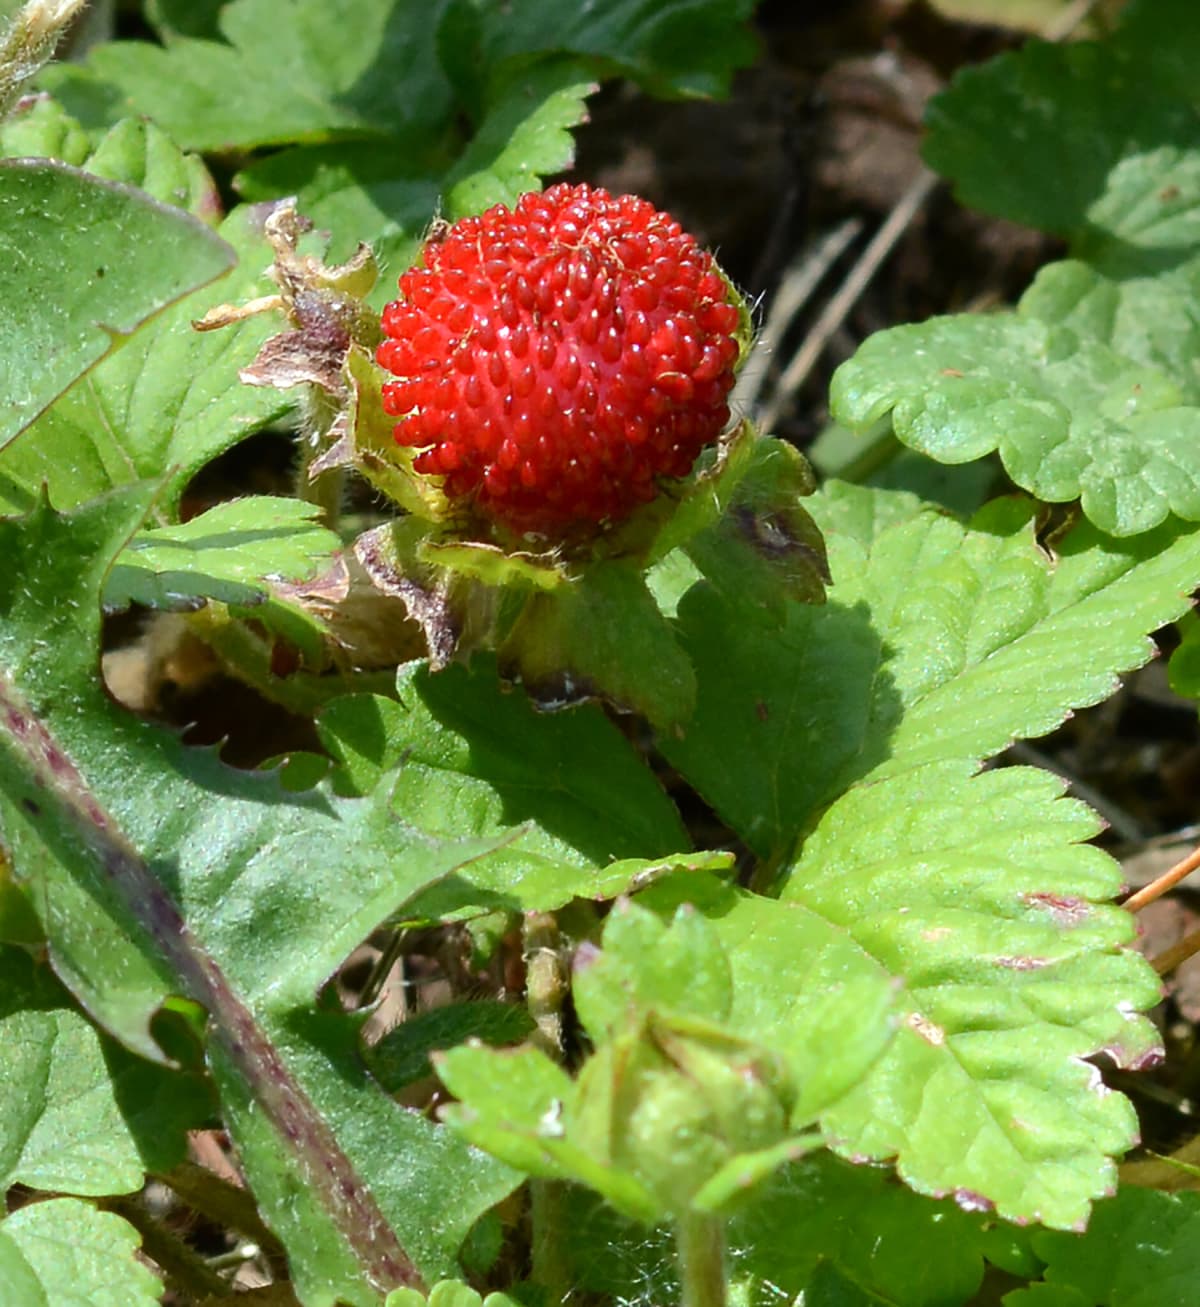 Mock strawberry fruit on the bush